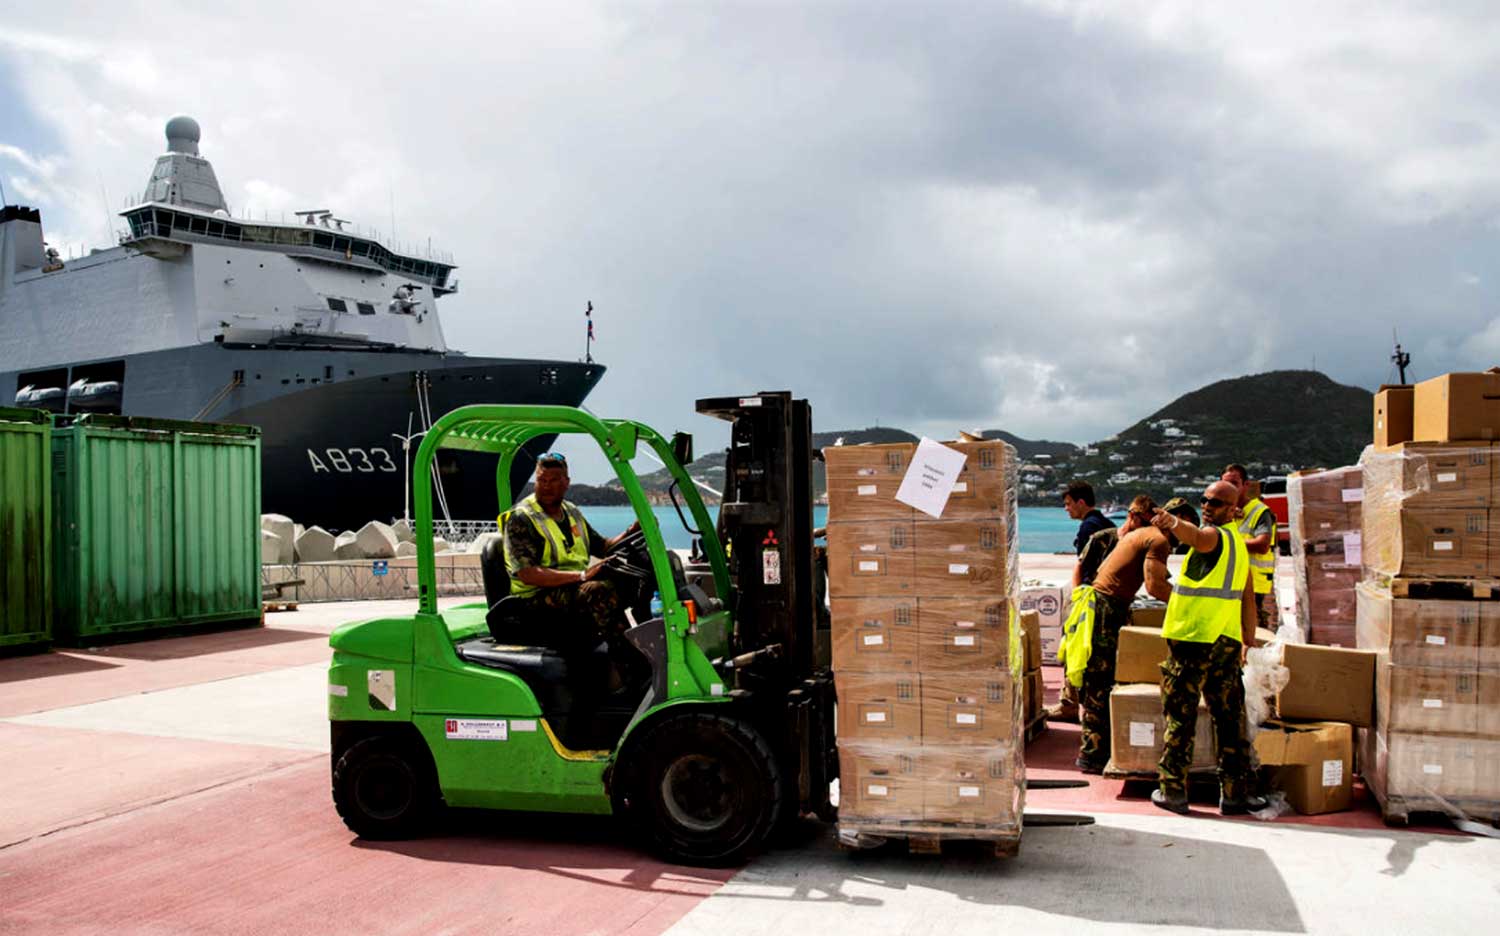 Miljoen kilo aan hulpgoederen gelost op kade in Sint Maarten